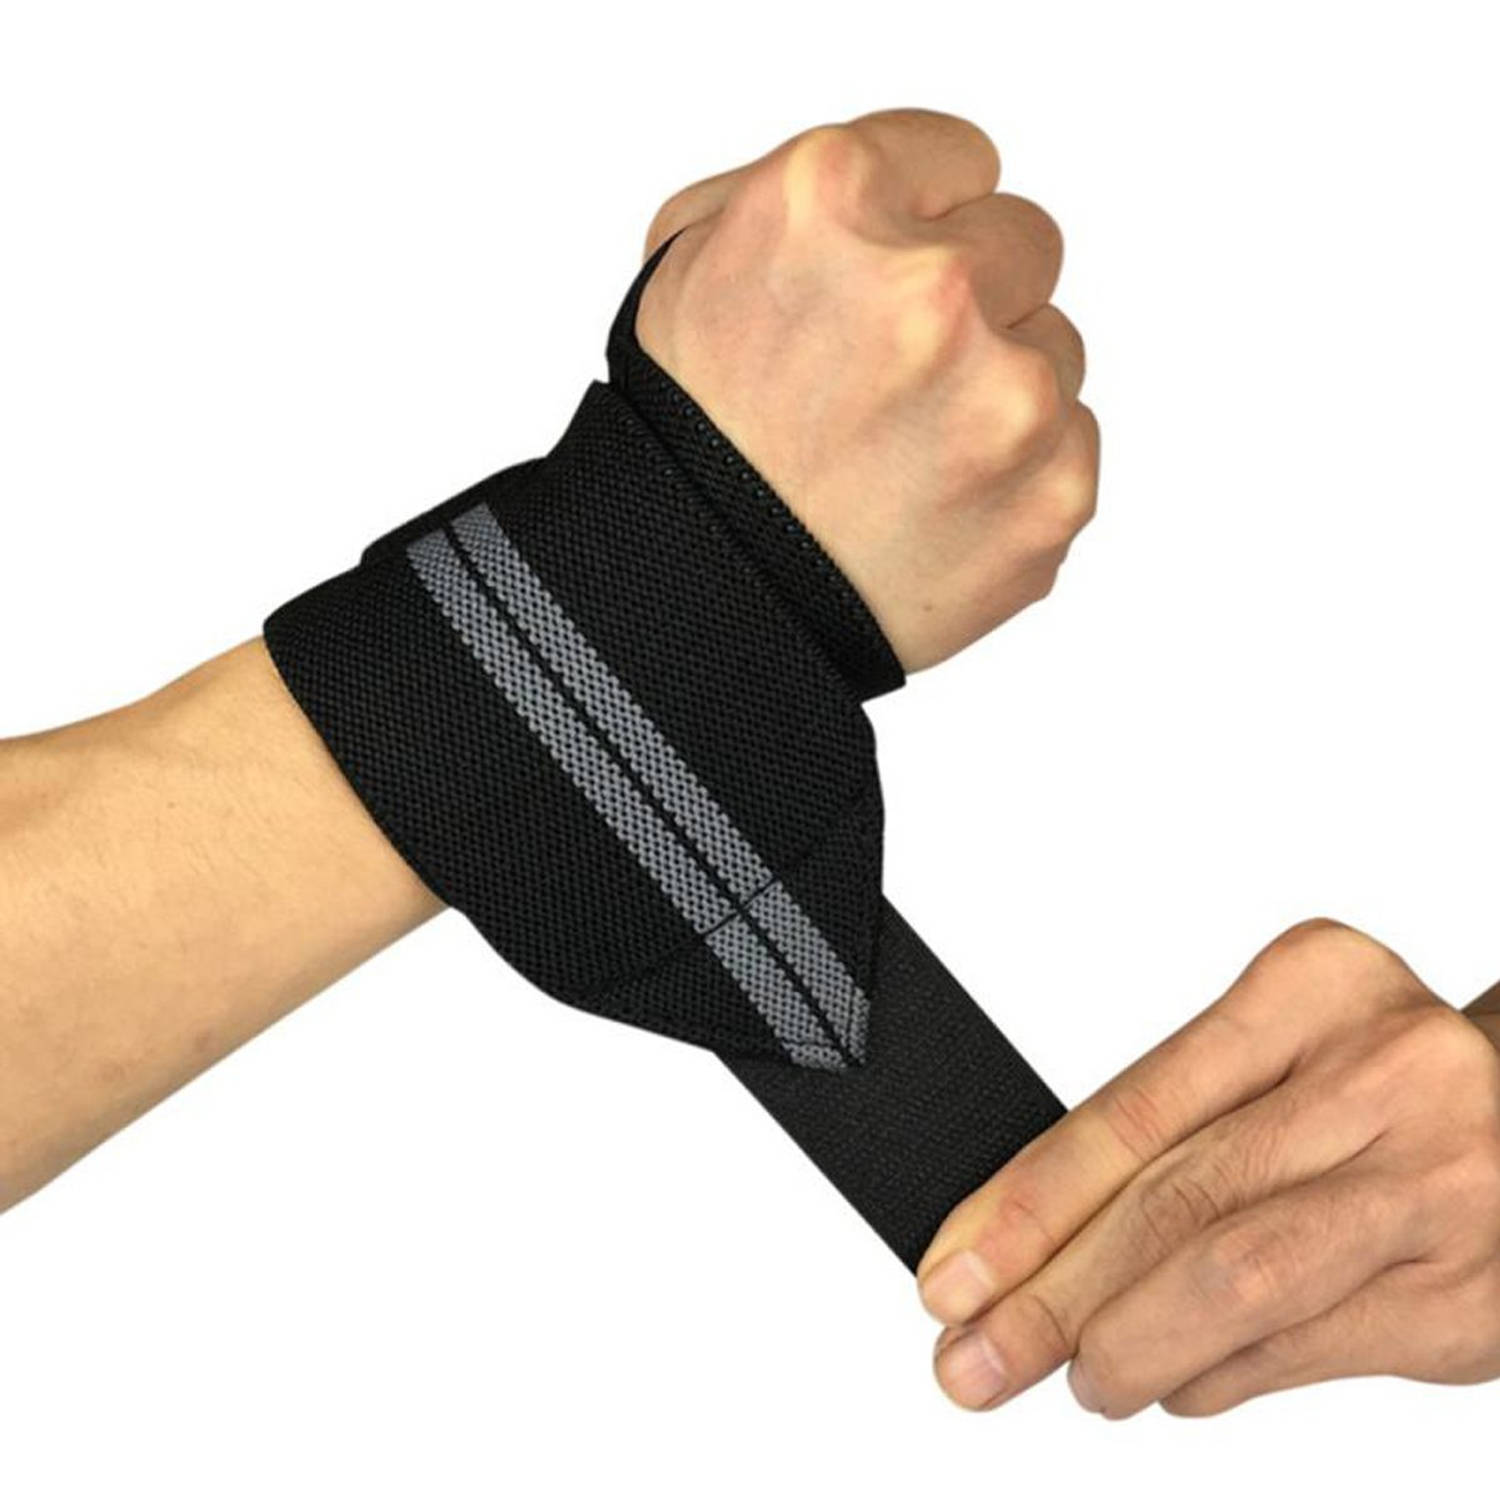 inhoud Regeren meten Fitness / Crossfit Polsband Polsbandage Wrist Support Wraps | Blokker